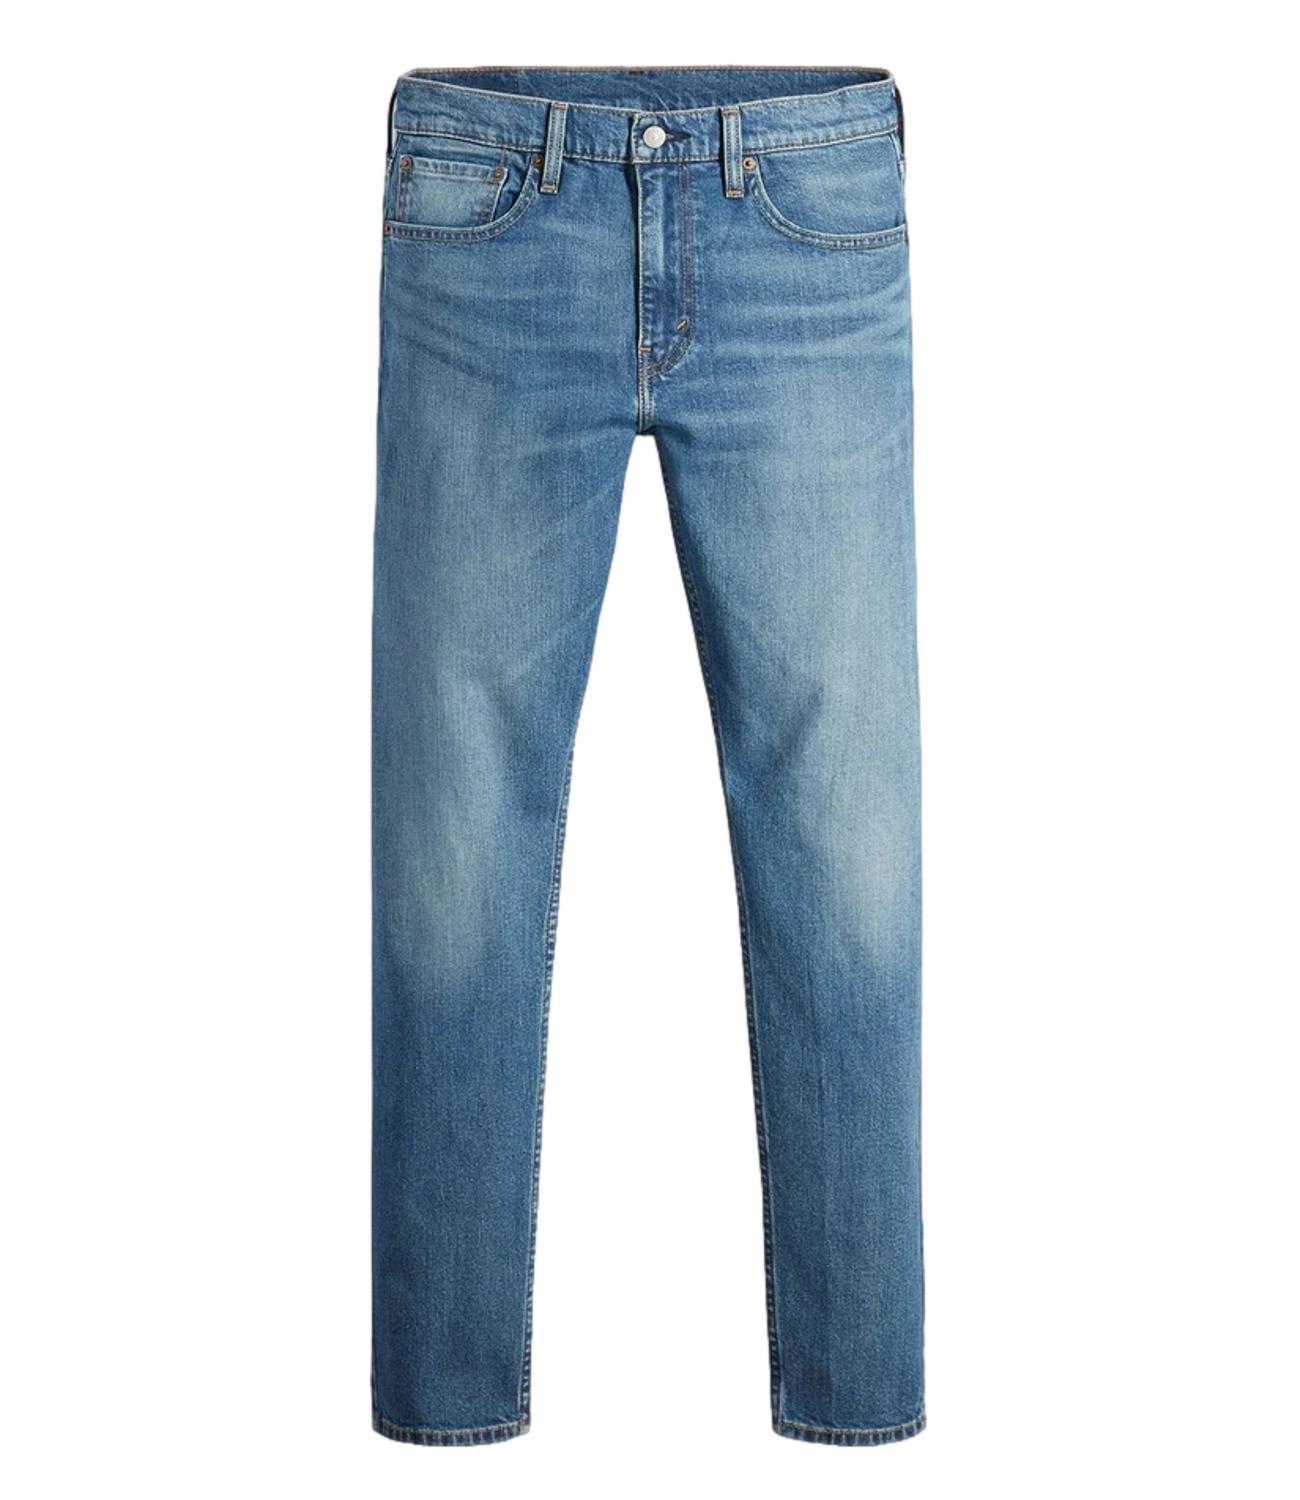 Jeans Uomo Medio 512 Slim Taper L30